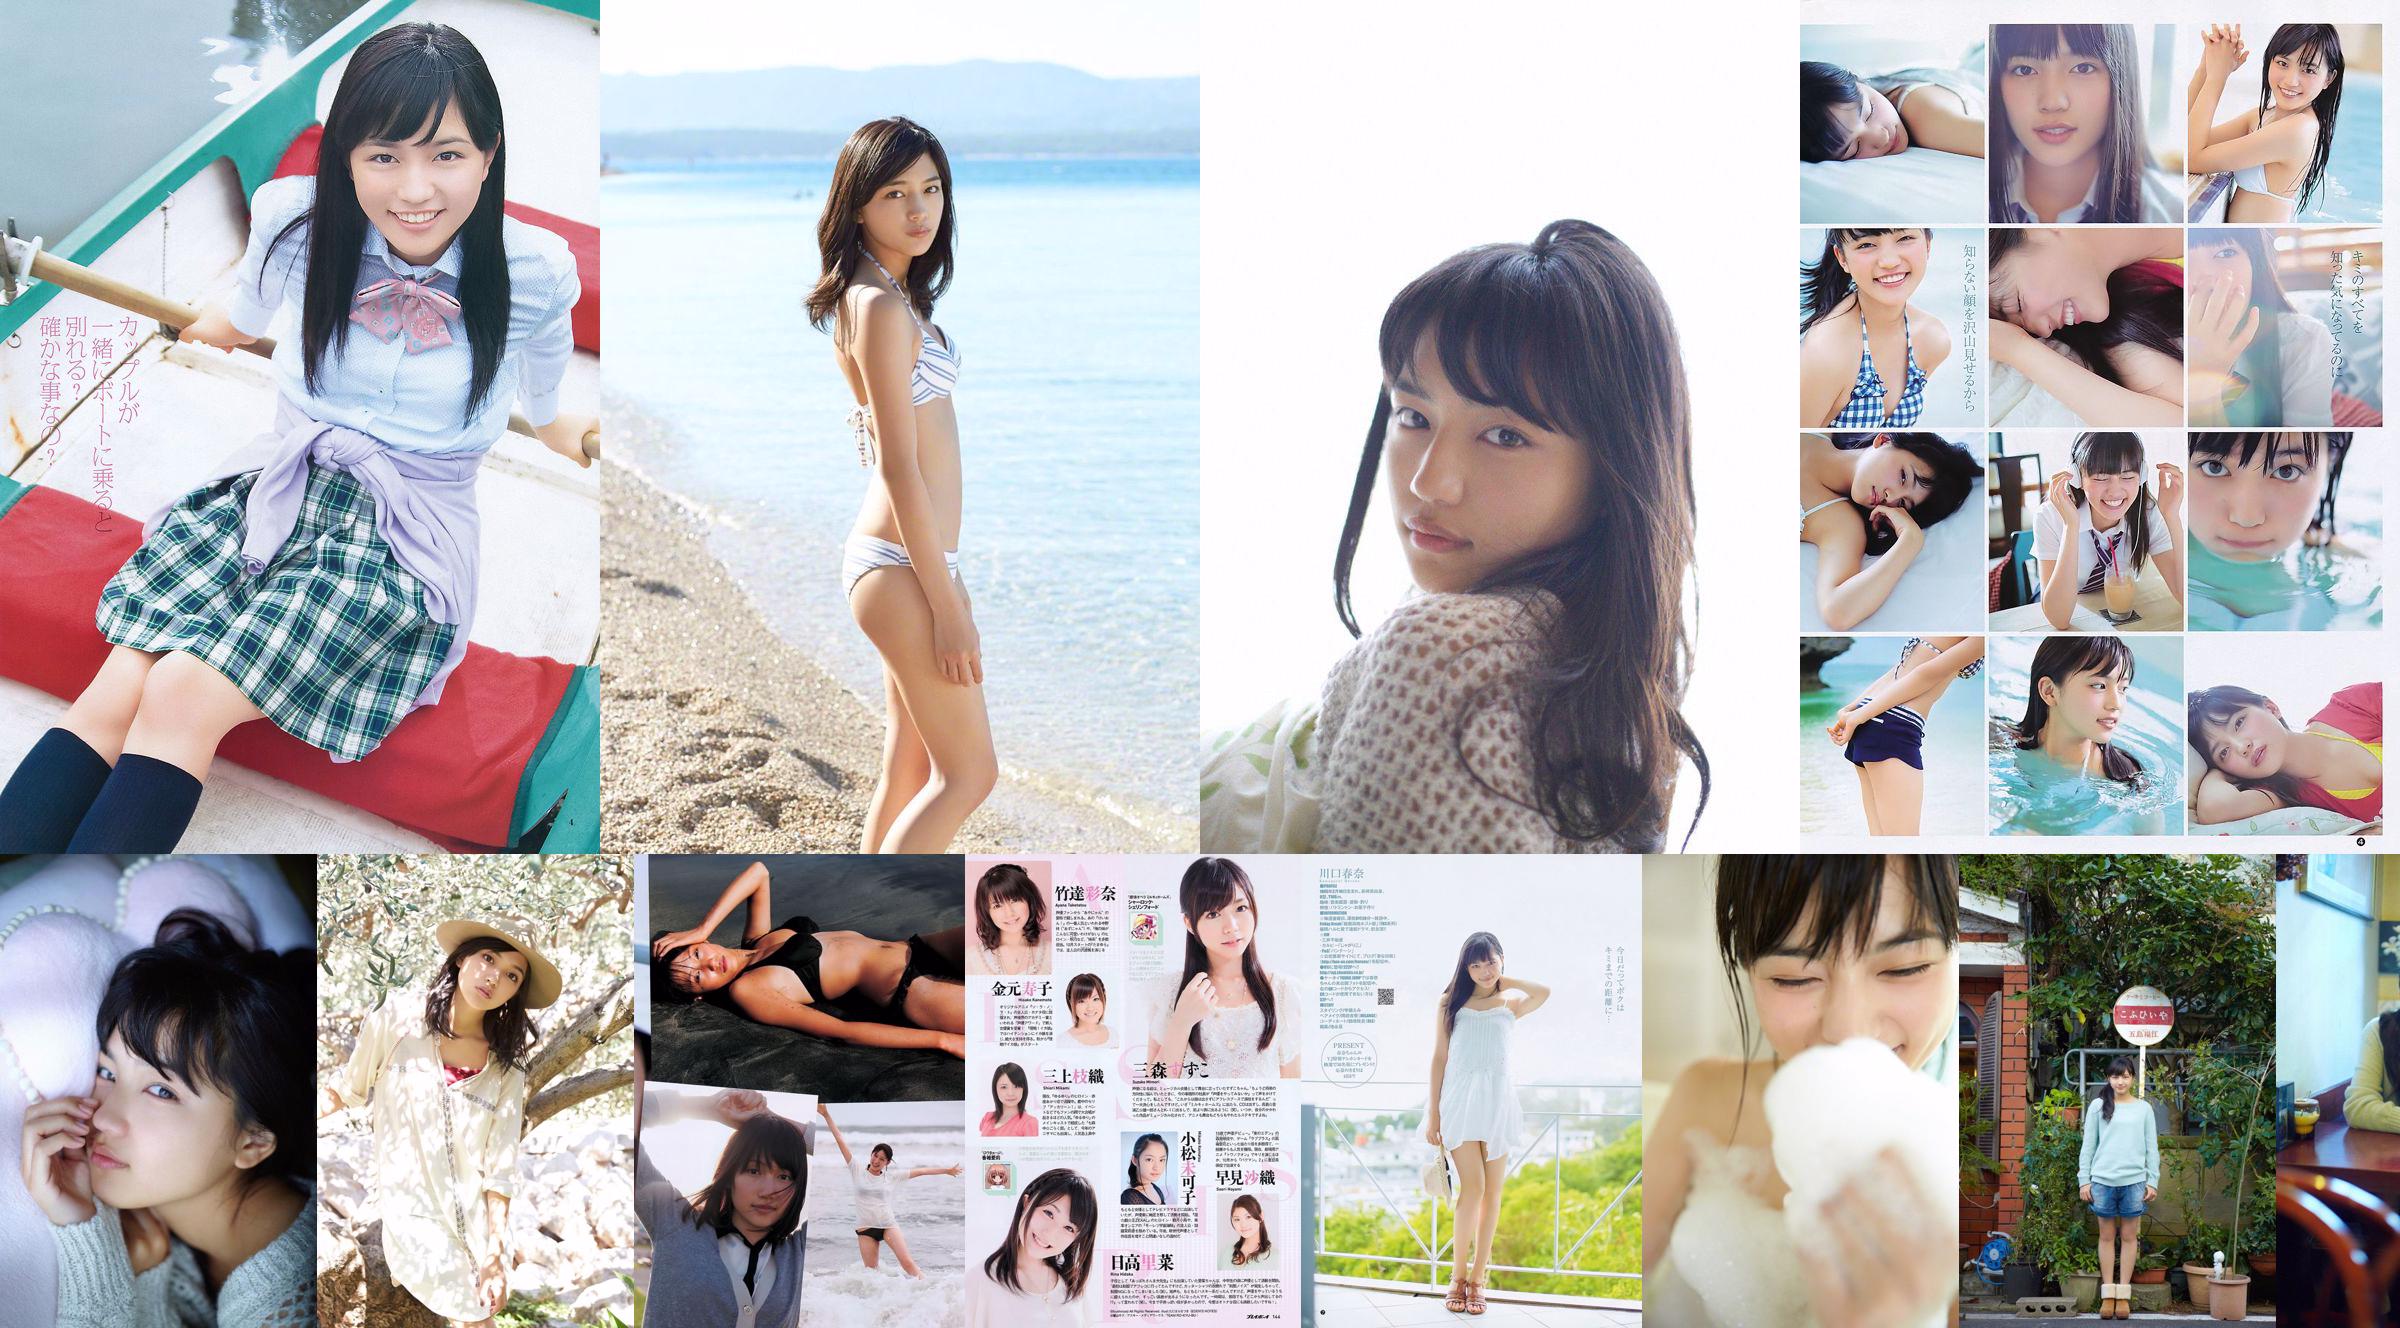 Haruna Kawaguchi Yumi Sugimoto [Weekly Young Jump] 2012 No.18 Photograph No.2b2548 Page 6